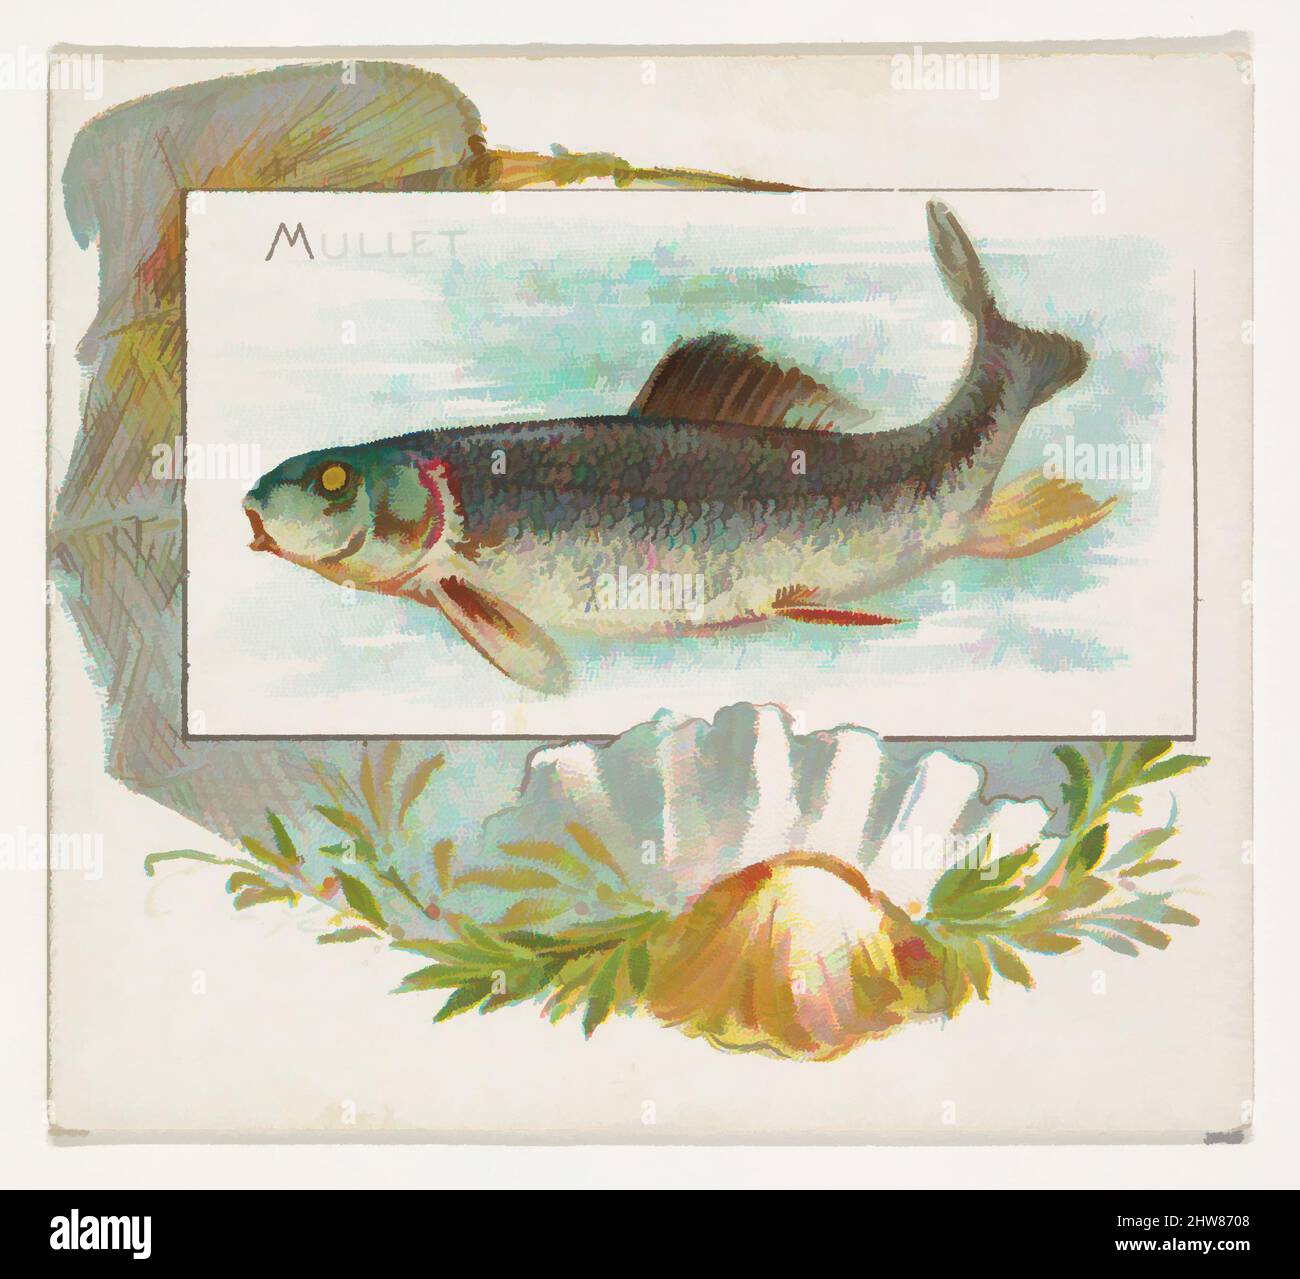 Art Inspired by Mullet, from Fish from American Waters series (N39) for Allen & Ginter Cigarettes, 1889, Commercial color litograph, Sheet: 2 7/8 x 3 1/4 in. (7,3 x 8,3 cm), carte commerciali della serie 'Fish from American Waters' (N39), emesse nel 1889 in un set di 50 carte da promuovere, opere classiche modernizzate da Artotop con un tuffo di modernità. Forme, colore e valore, impatto visivo accattivante sulle emozioni artistiche attraverso la libertà delle opere d'arte in modo contemporaneo. Un messaggio senza tempo che persegue una nuova direzione selvaggiamente creativa. Artisti che si rivolgono al supporto digitale e creano l'NFT Artotop Foto Stock